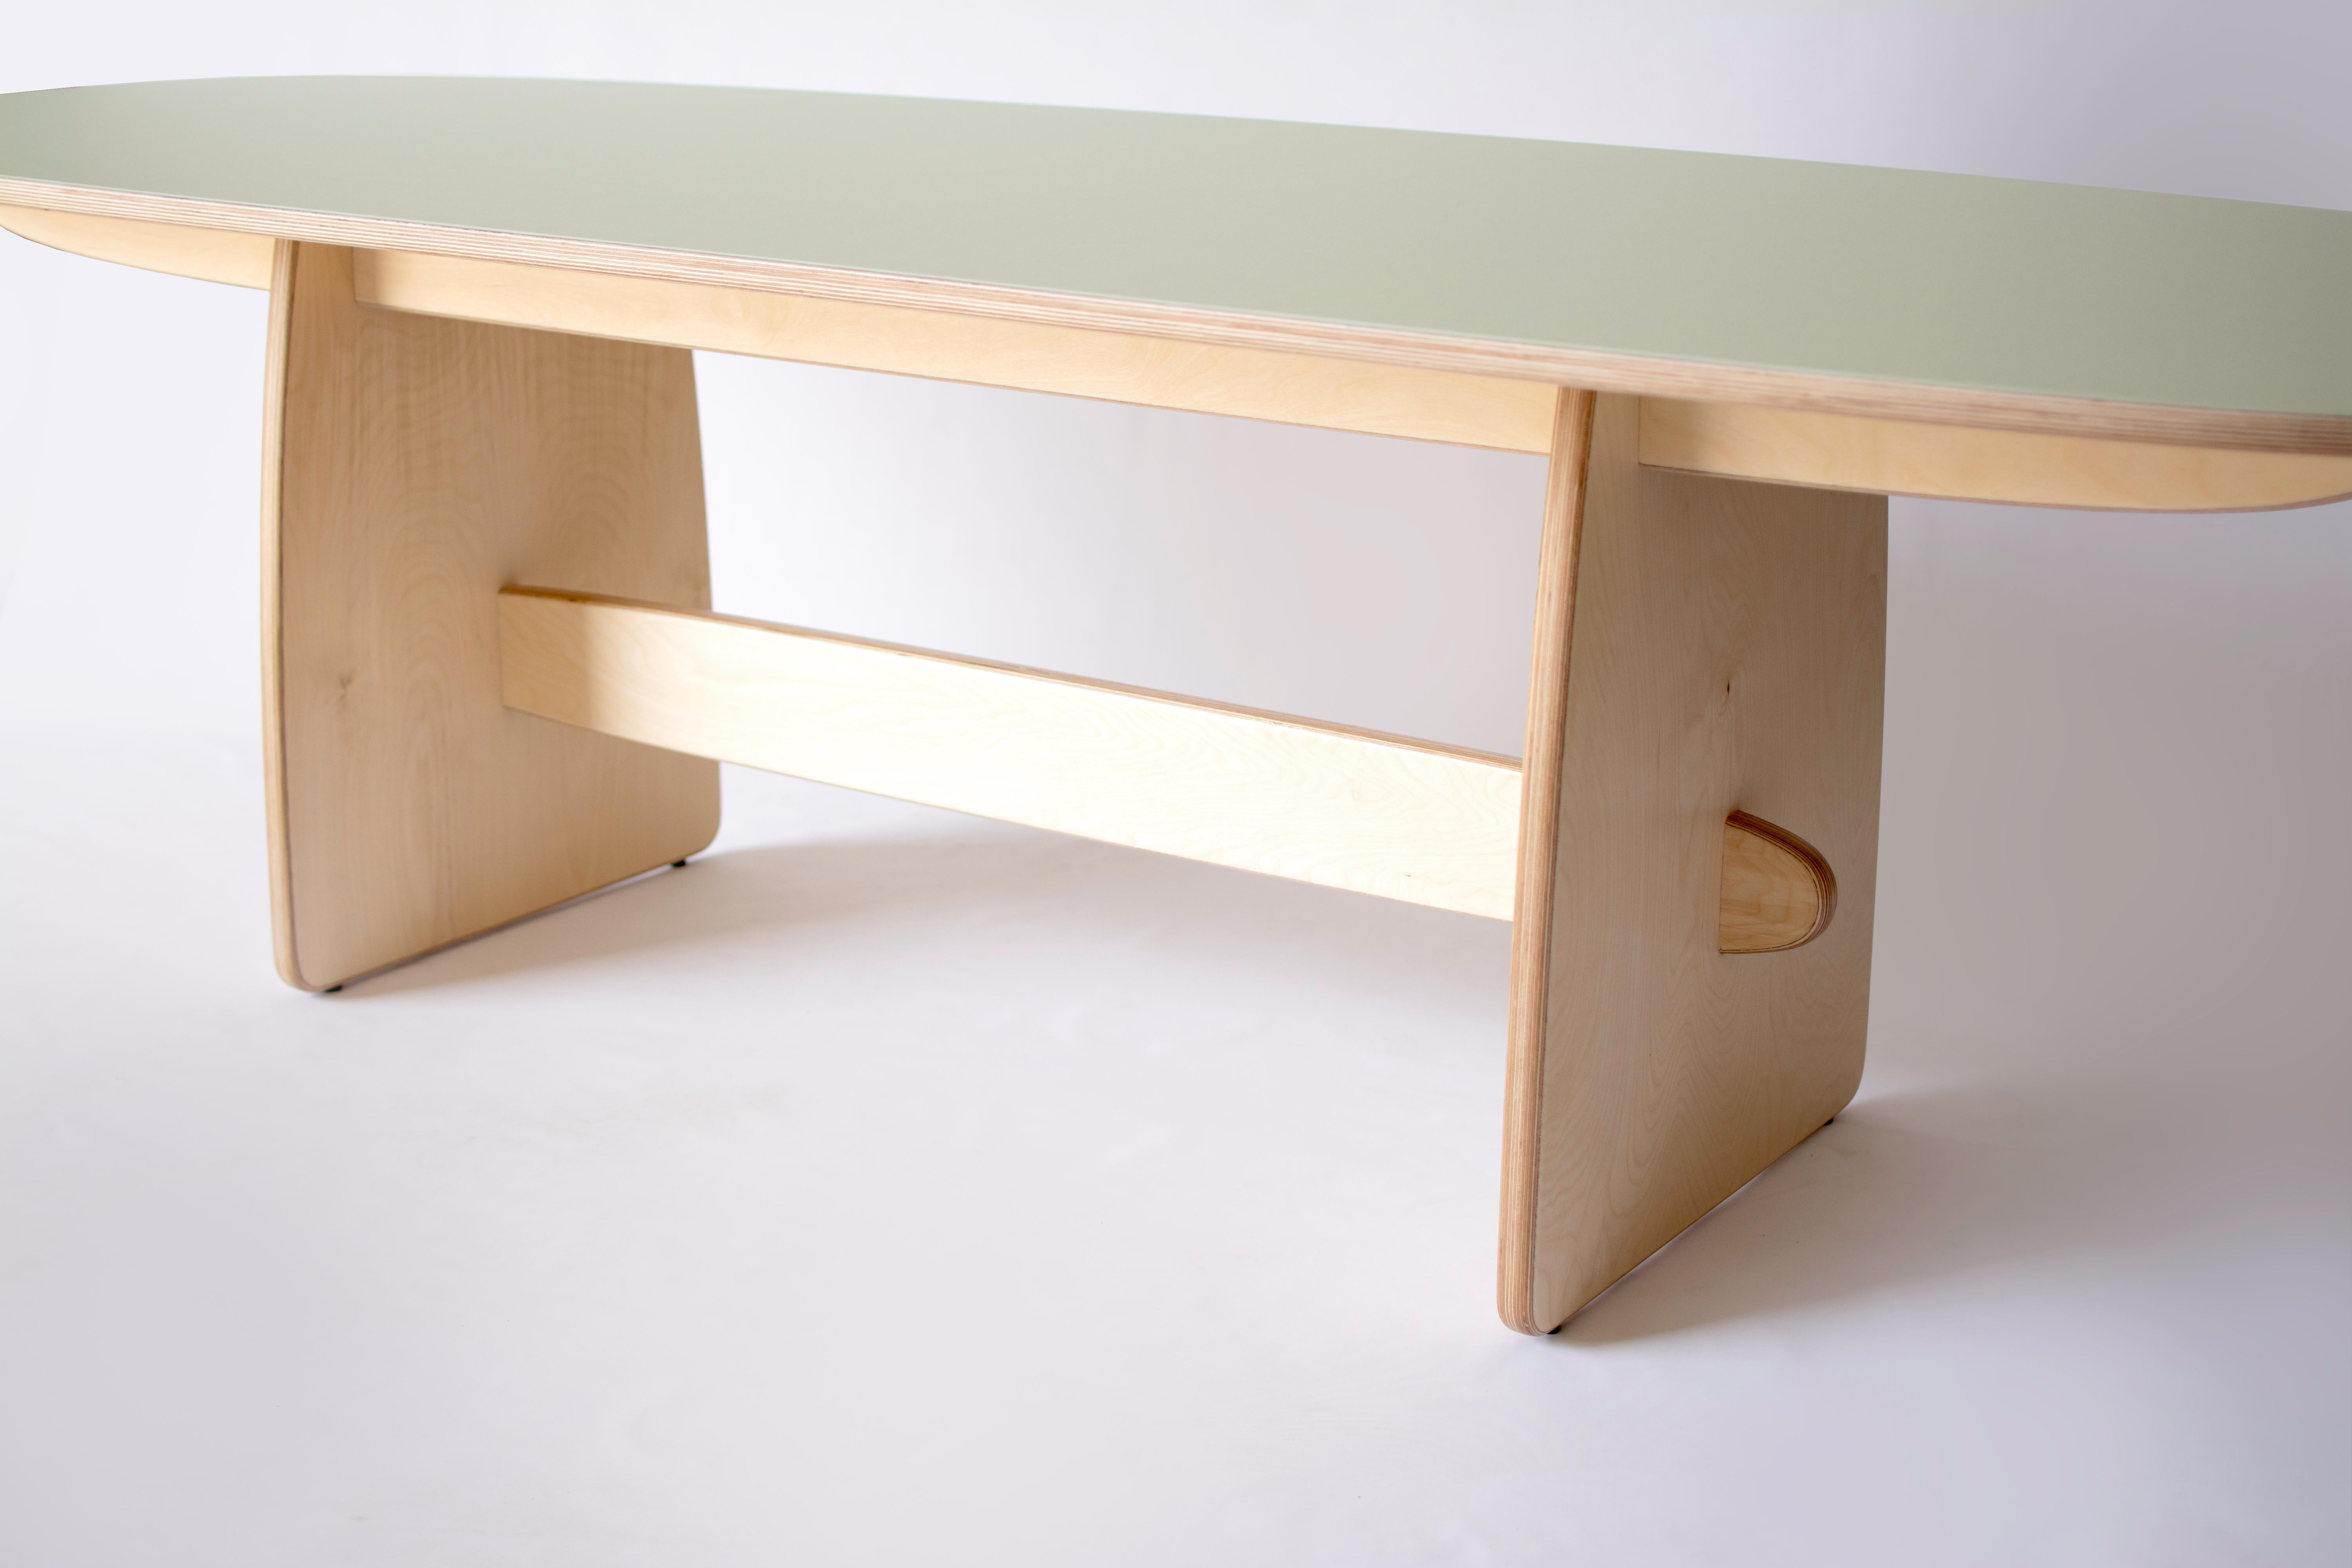 La table de salle à manger Woodbine est fabriquée en contreplaqué de bouleau de 1,25 pouce d'épaisseur avec une finition à l'huile frottée à la main et un plateau en linoléum pour meubles entièrement naturel. La base ludique et le sommet coloré